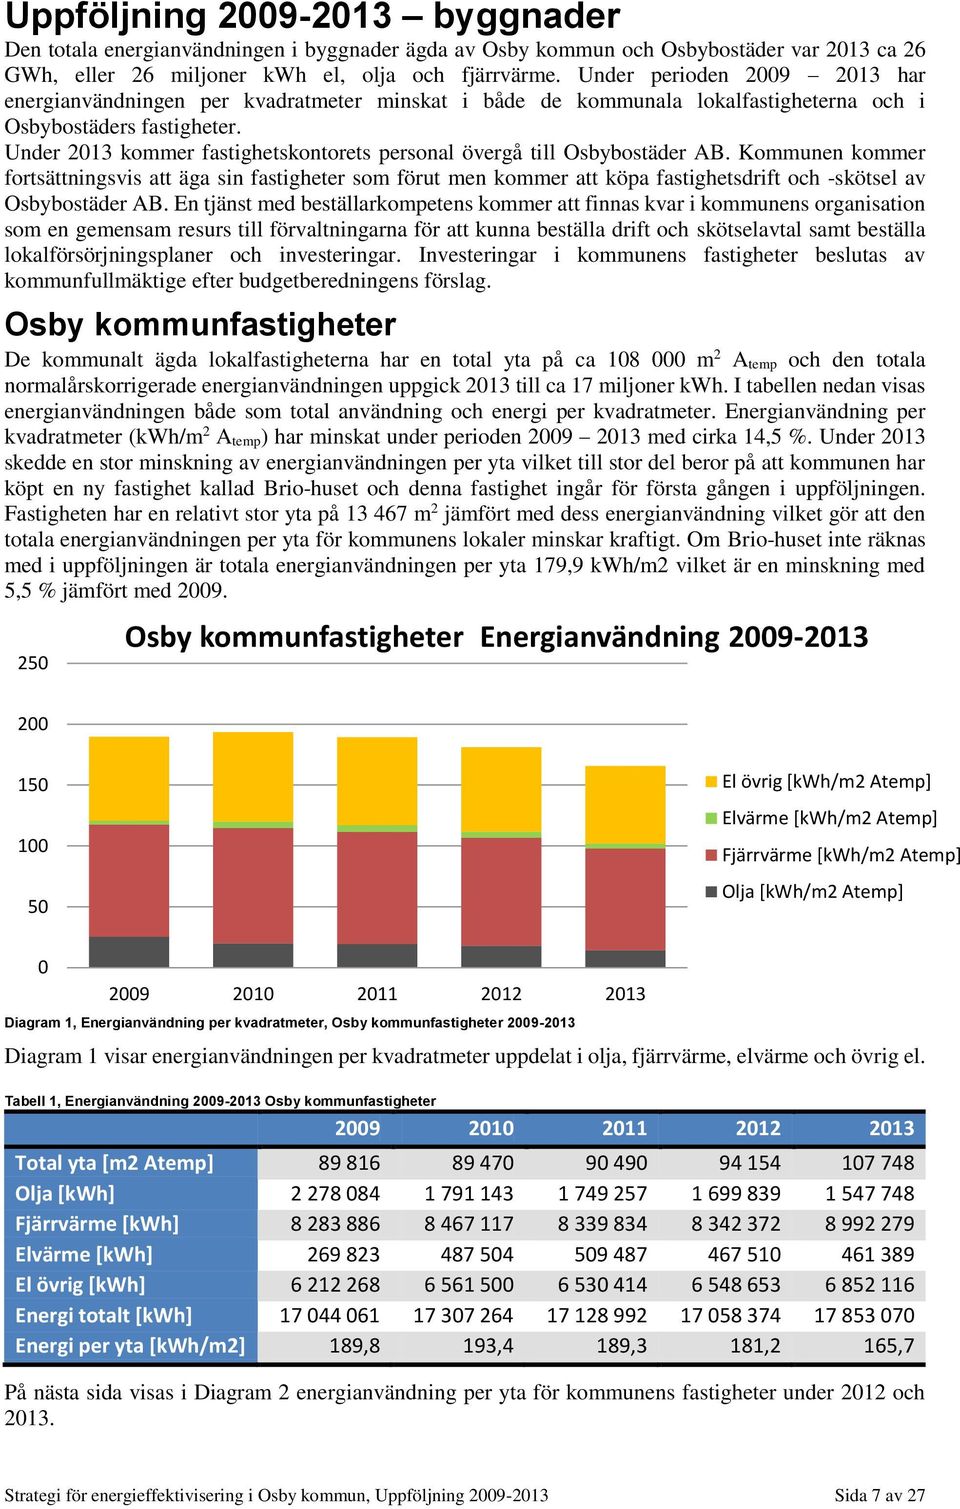 Under 2013 kommer fastighetskontorets personal övergå till Osbybostäder AB.